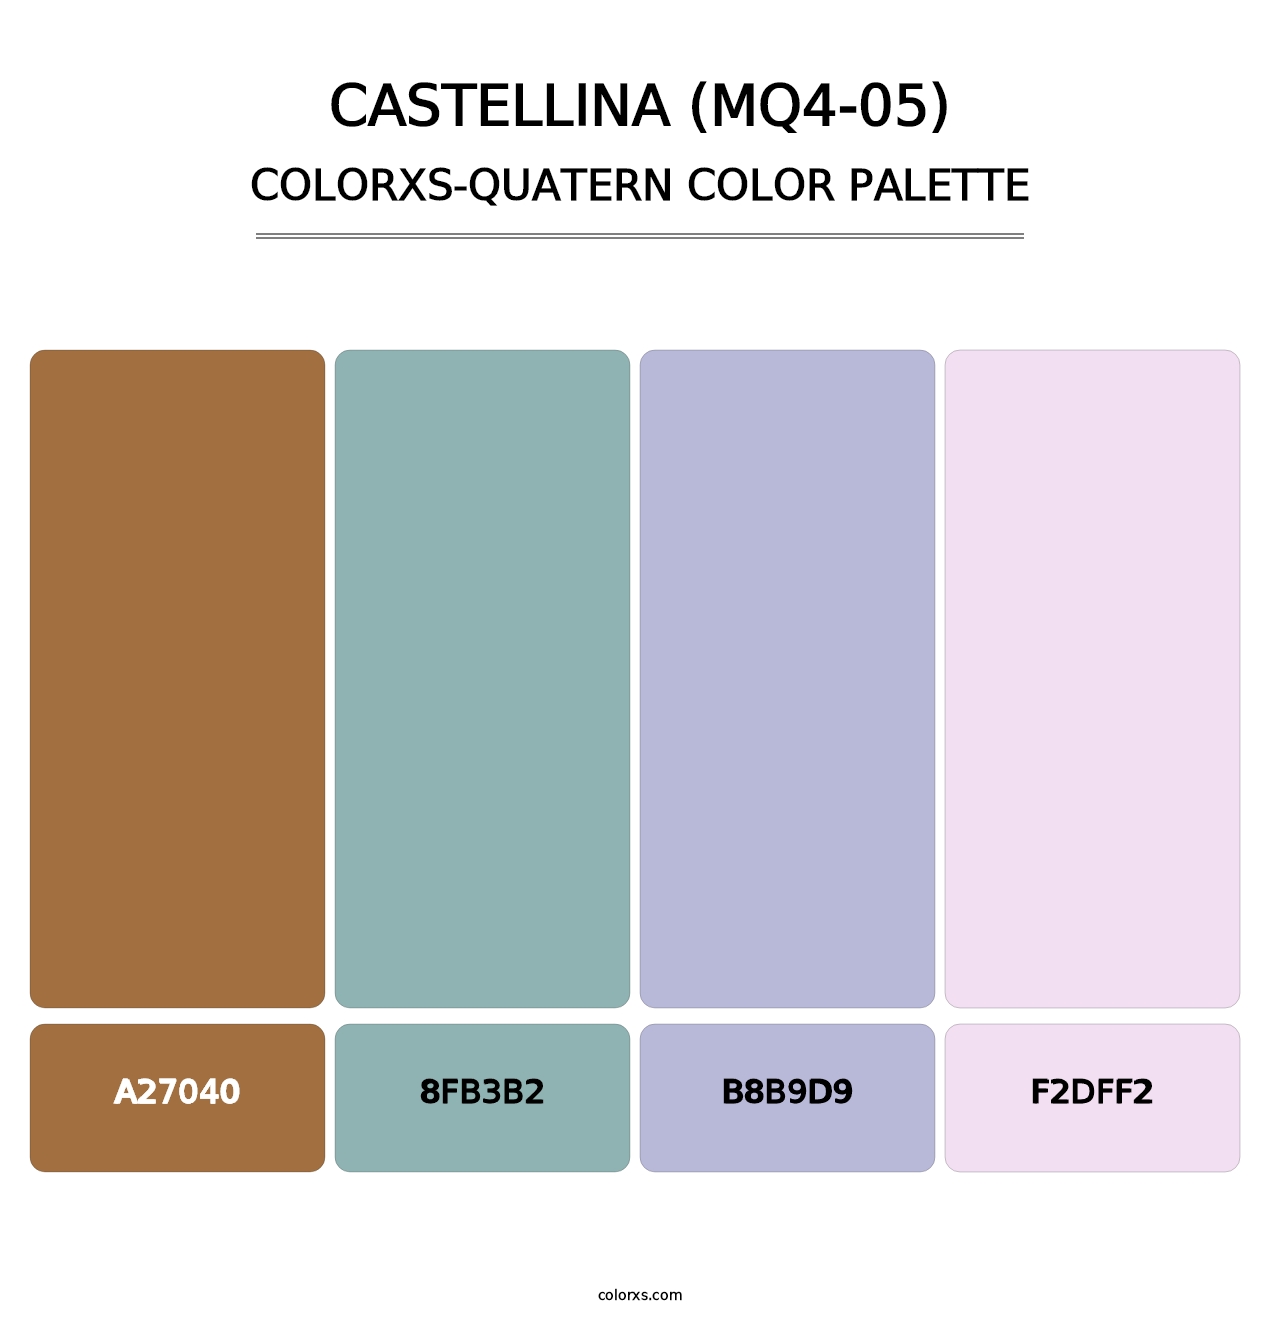 Castellina (MQ4-05) - Colorxs Quatern Palette